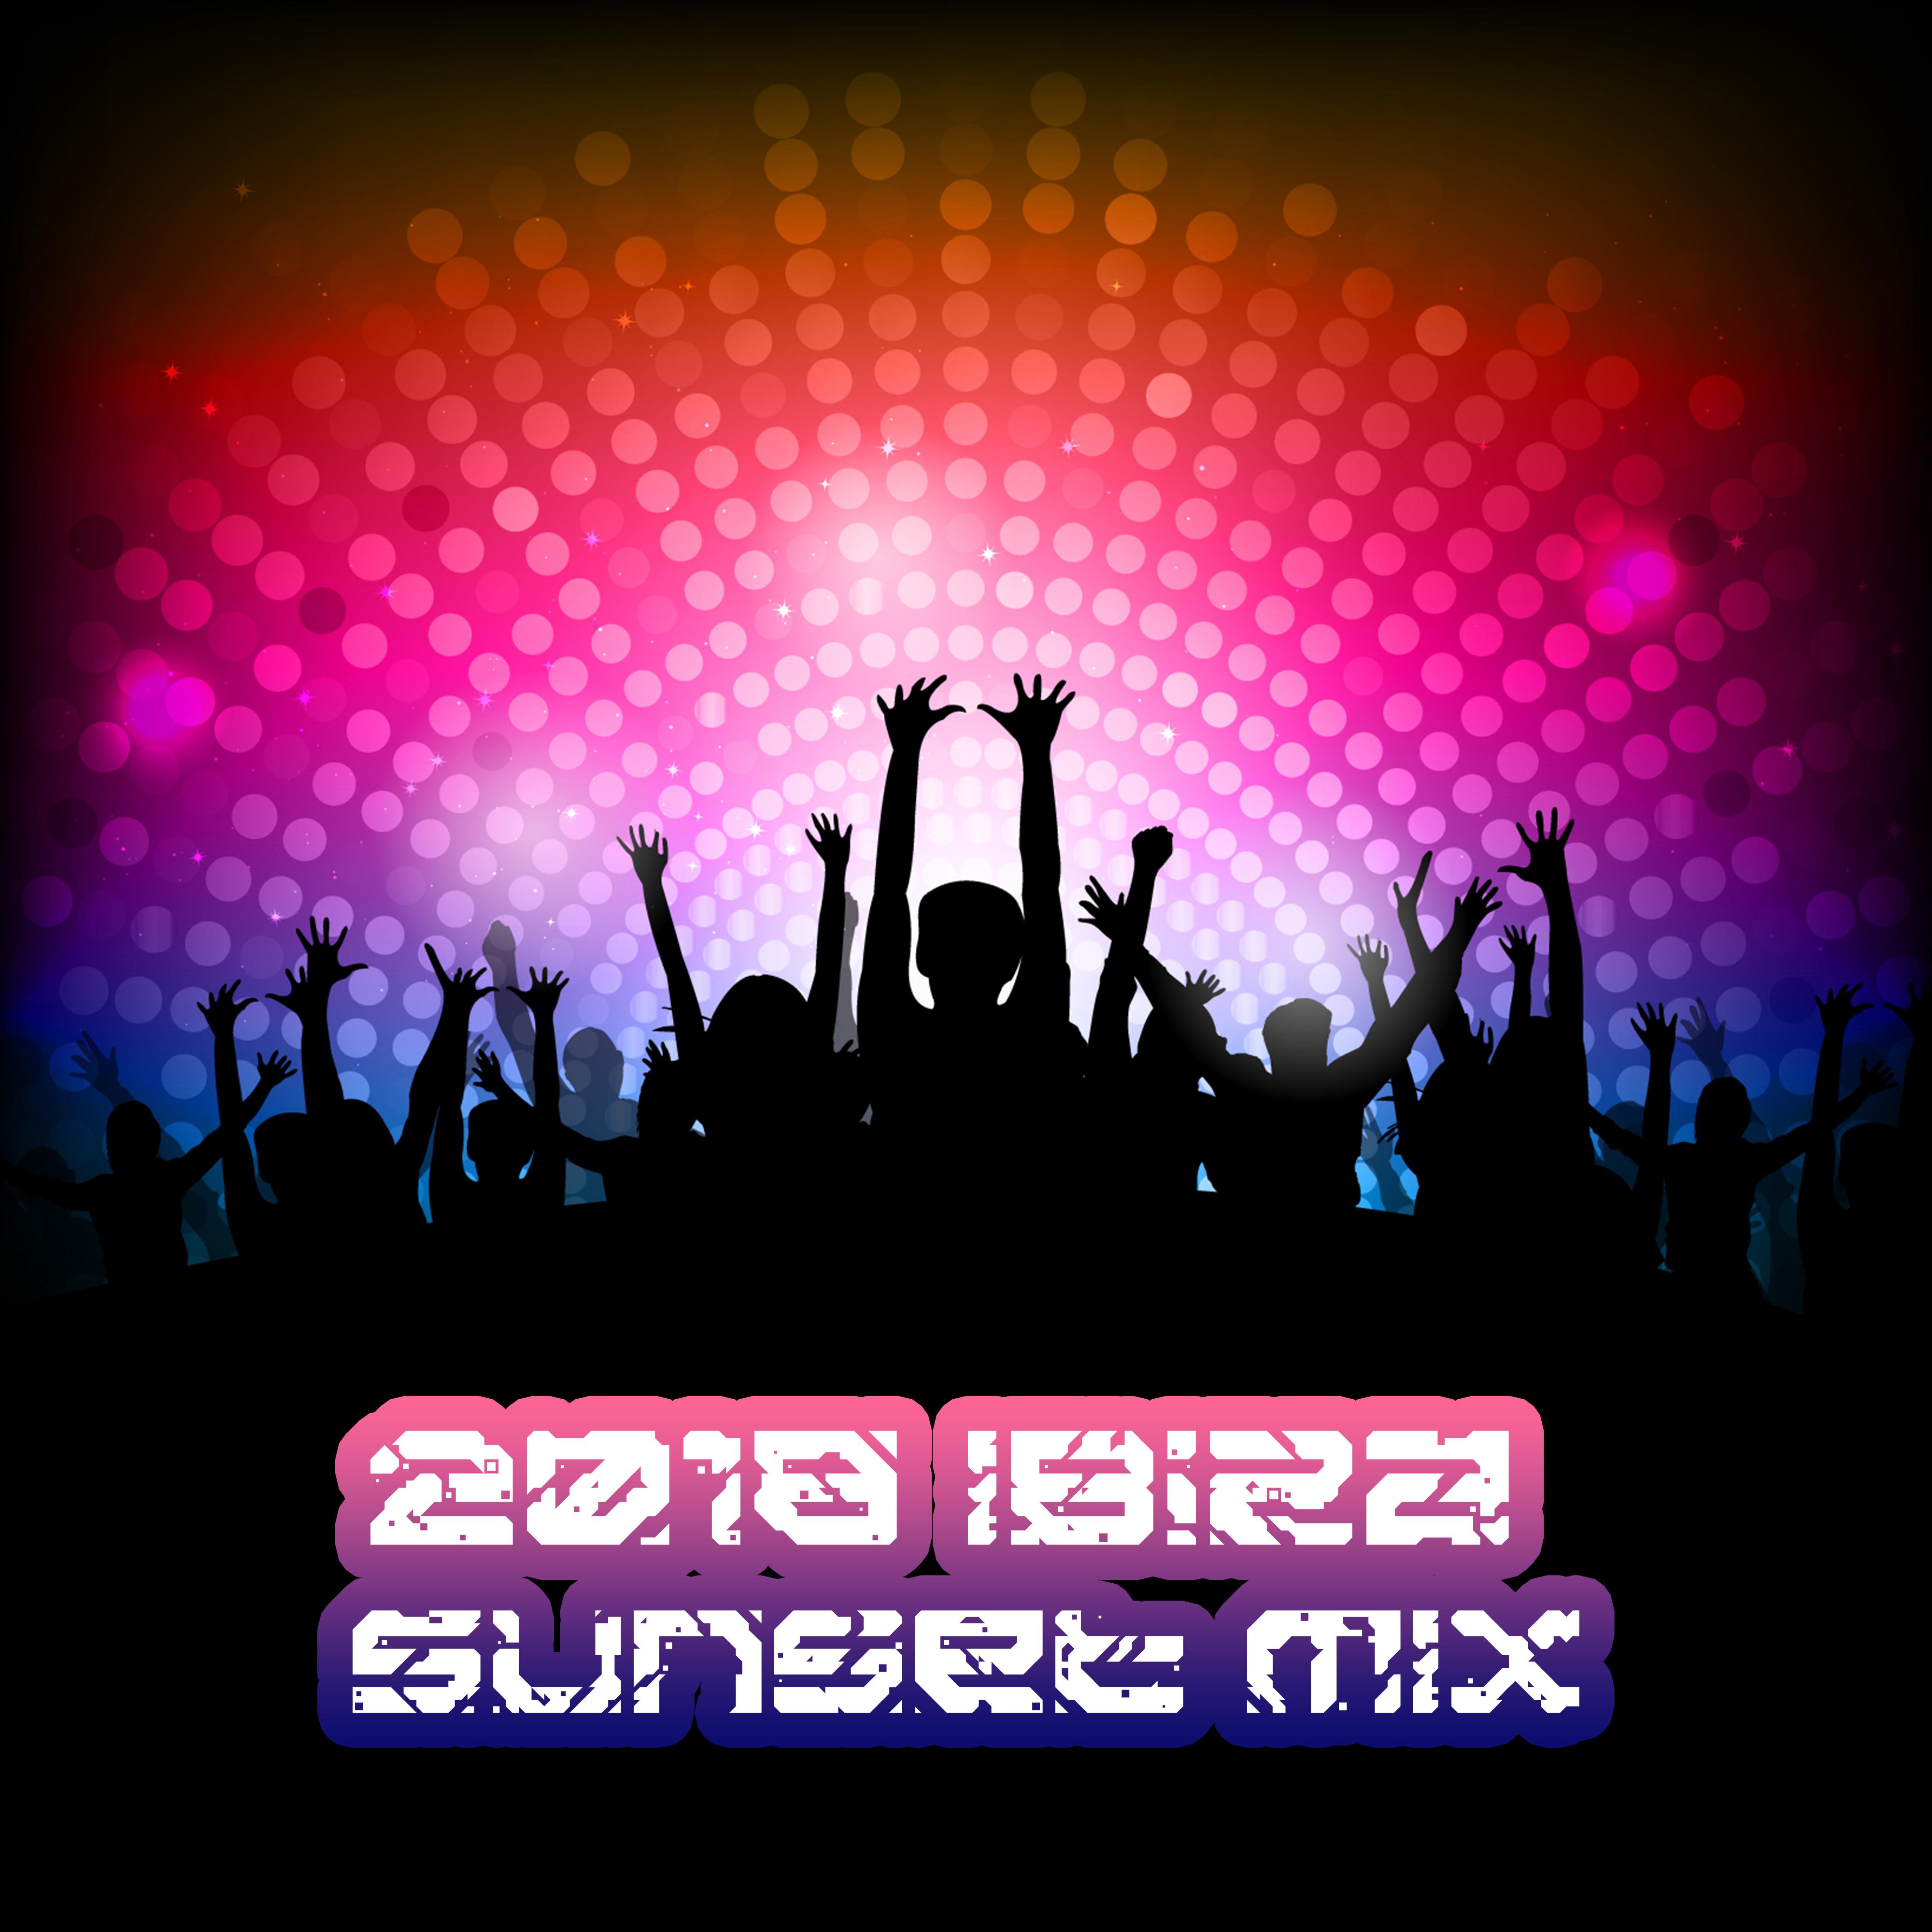 2018 Ibiza Sunset MIX